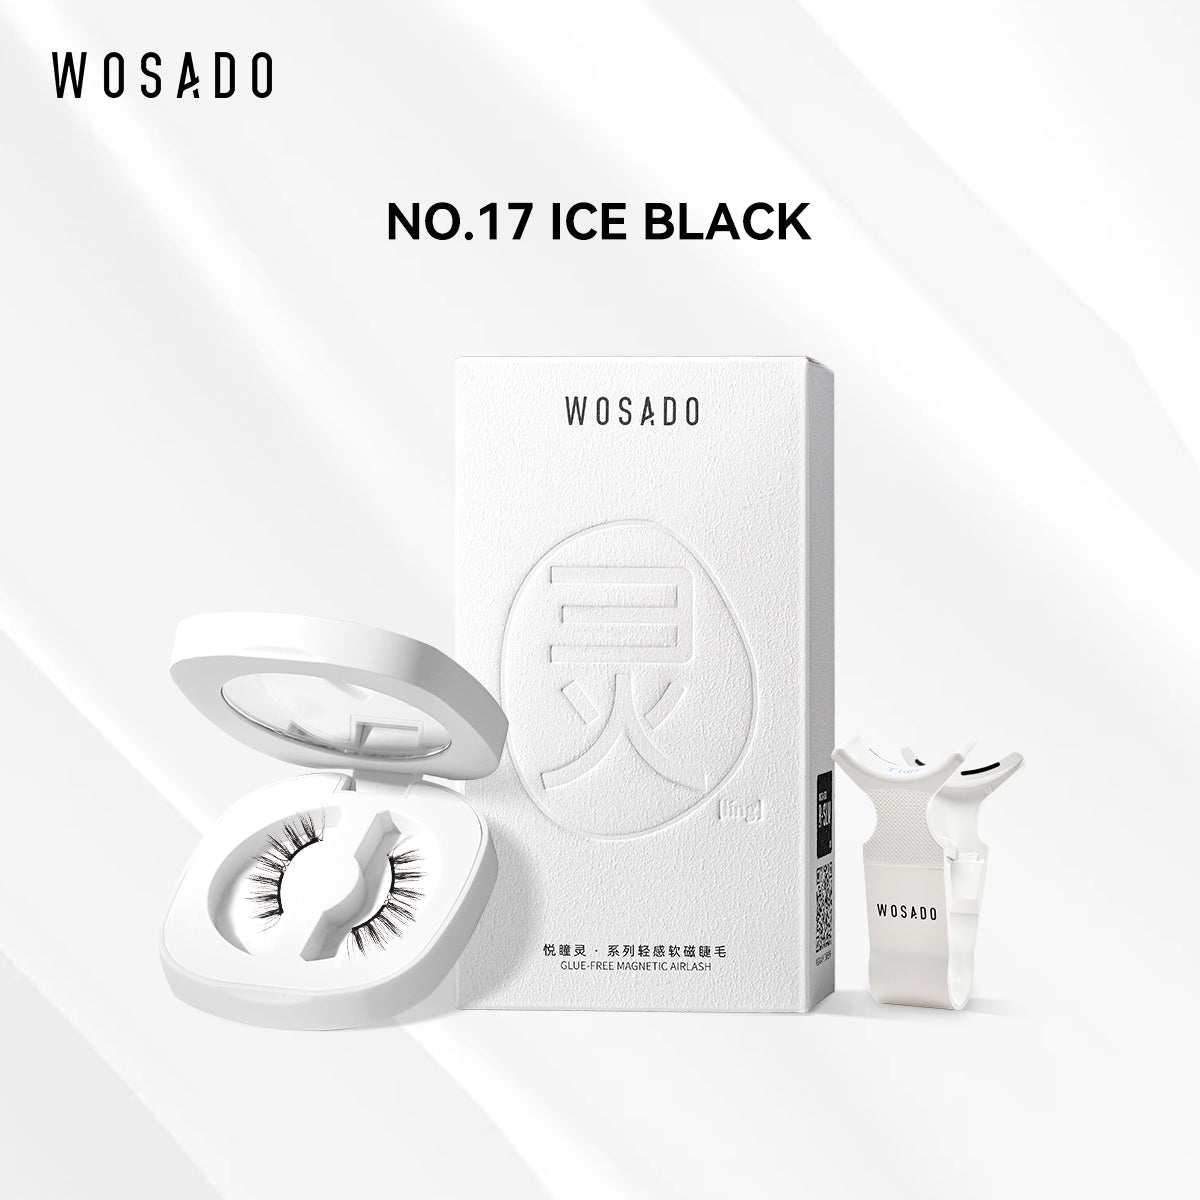 【WOSADO】NO.17 Ice Black